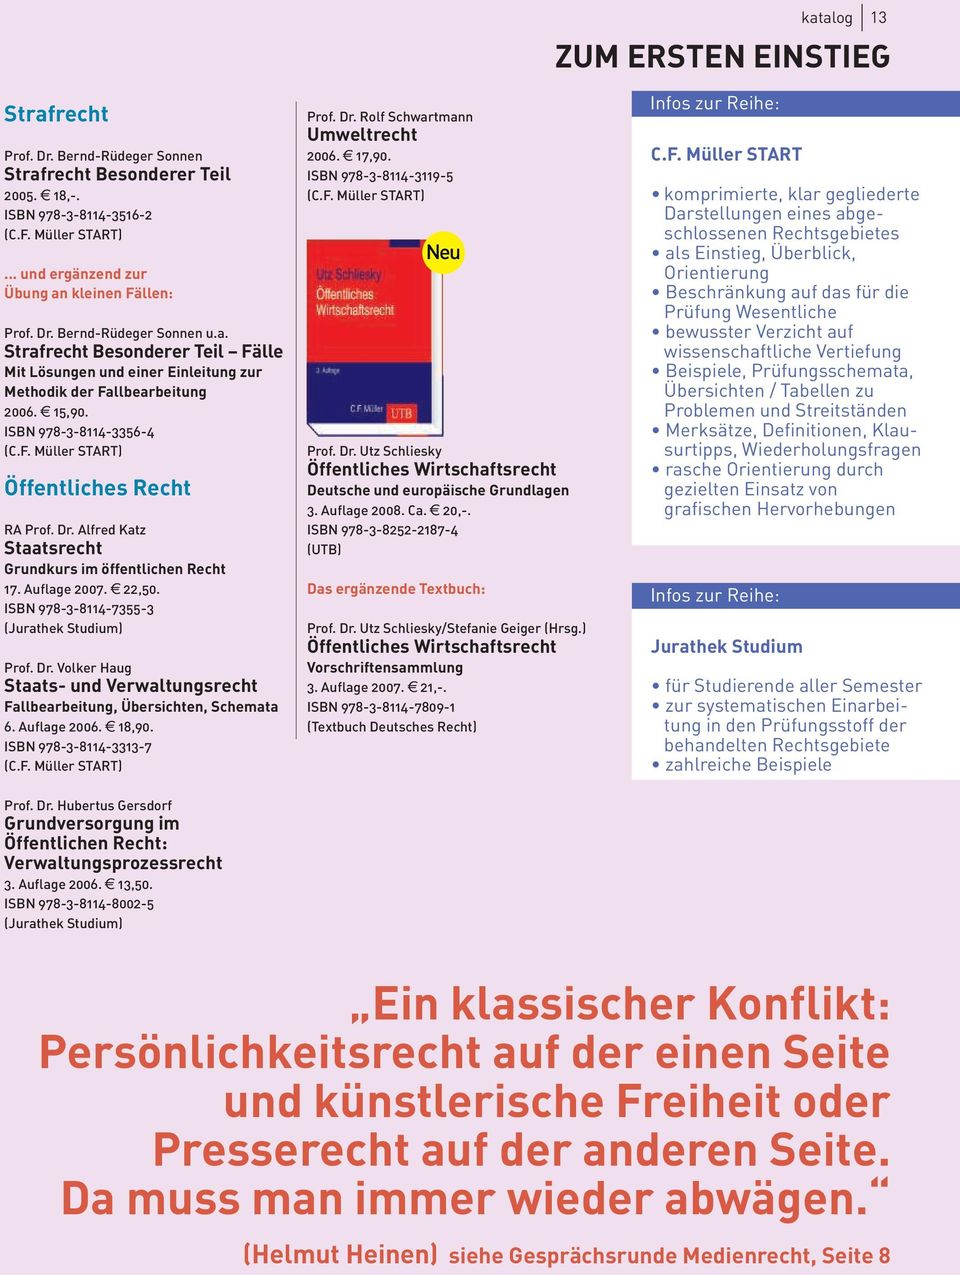 Alfred Katz Staatsrecht Grundkurs im öffentlichen Recht 17. Auflage 2007. e 22,50. ISBN 978-3-8114-7355-3 (Jurathek Studium) Prof. Dr.